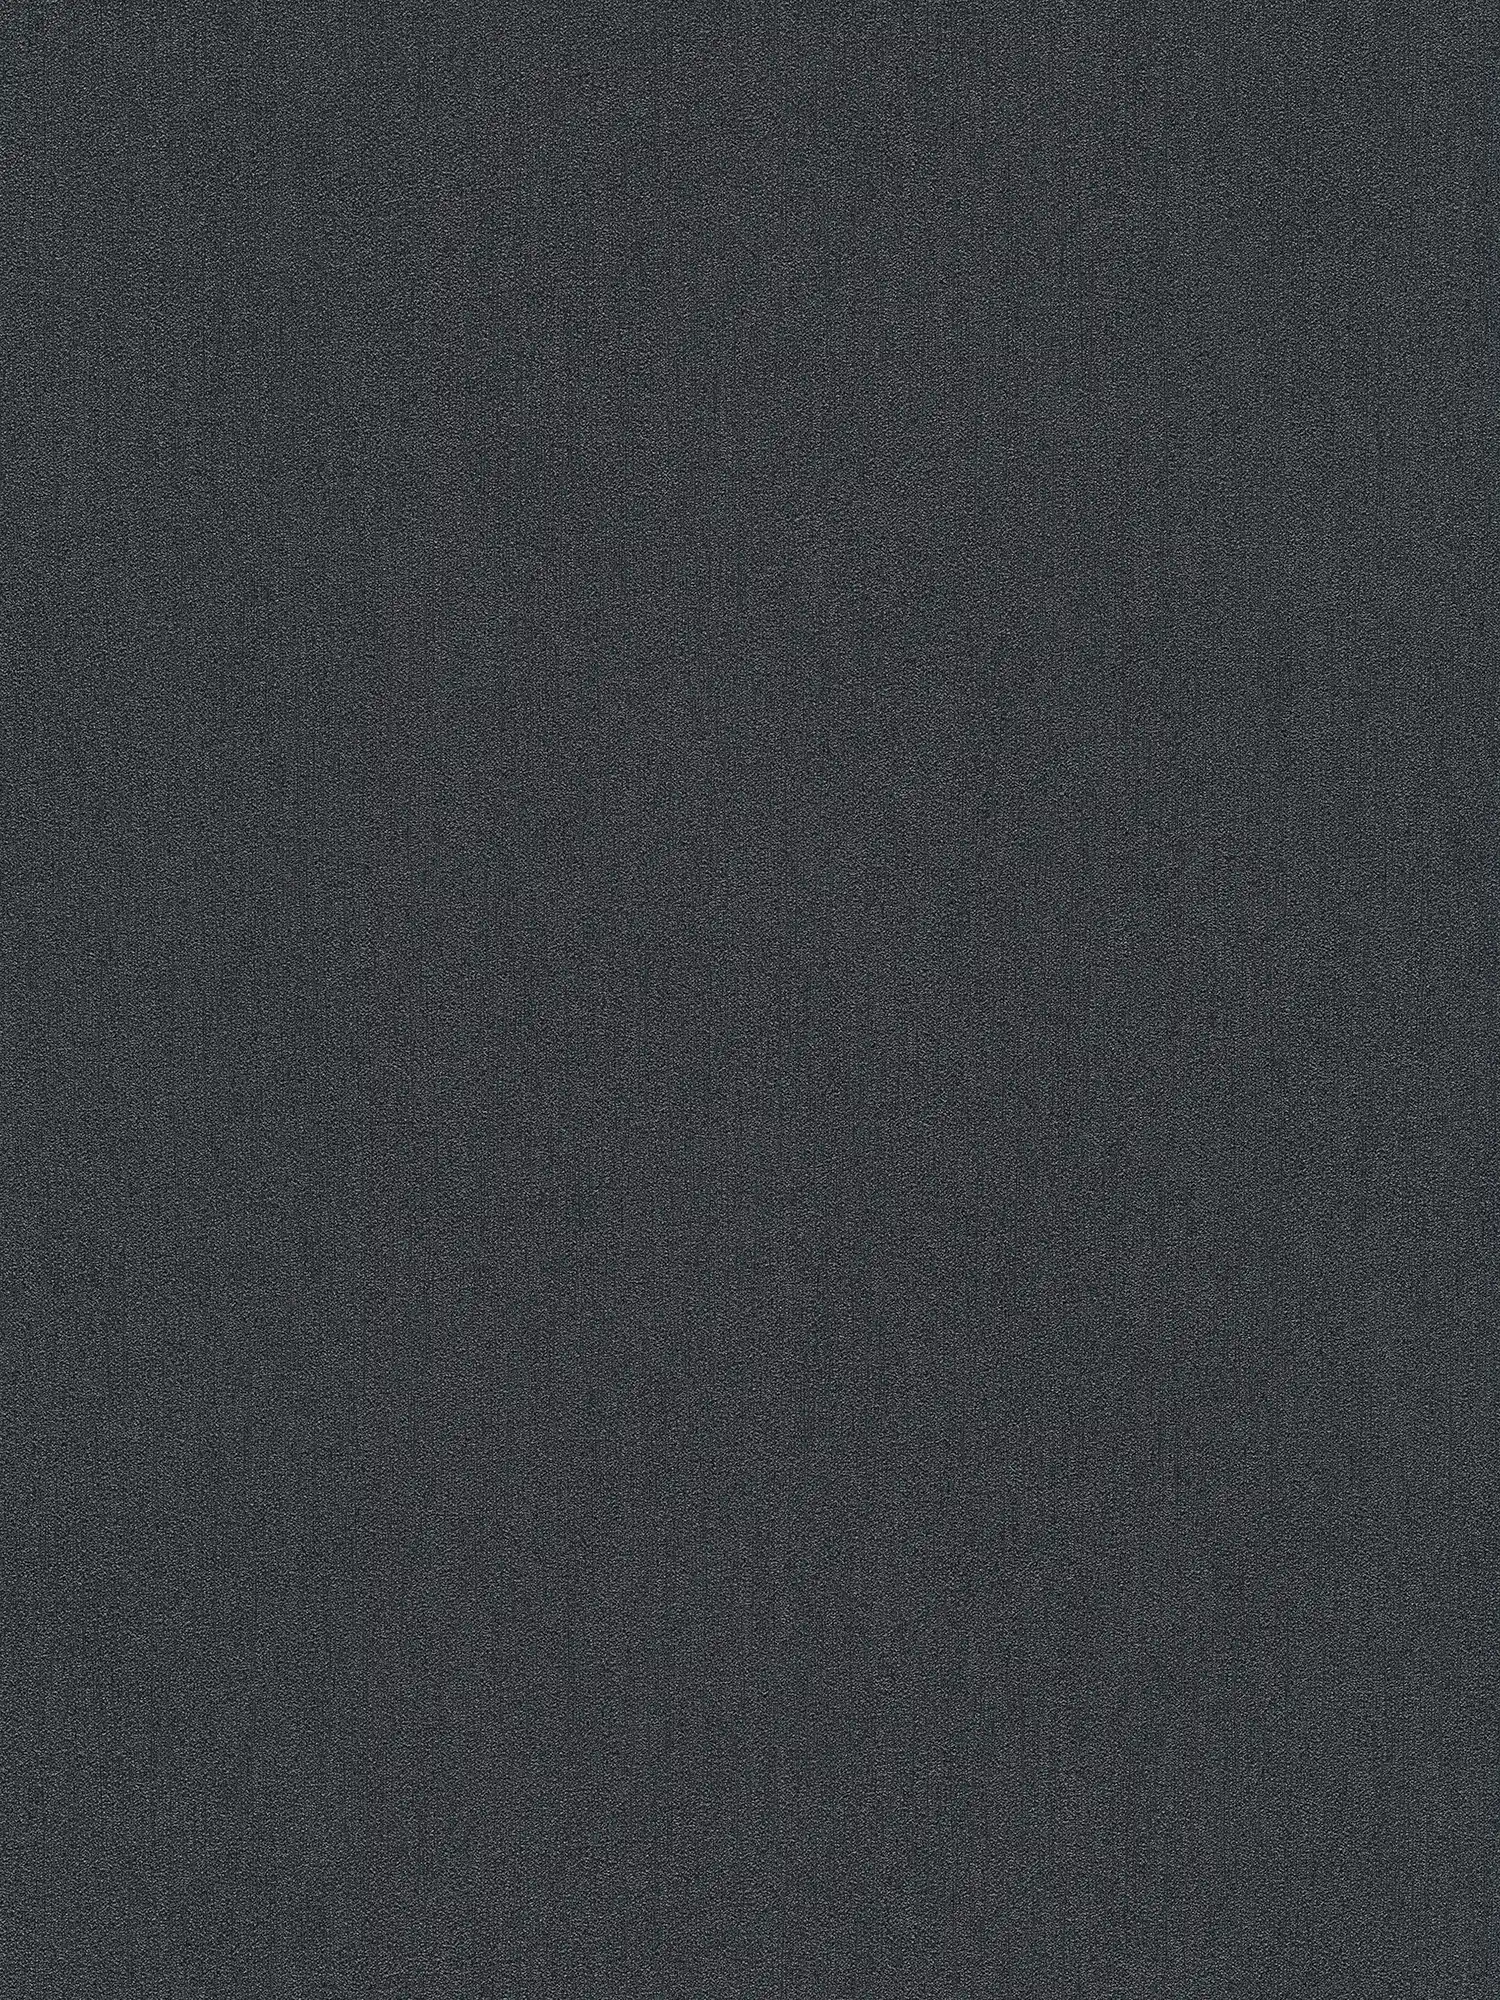 Papel pintado no tejido Karl LAGERFELD liso y con textura - negro
